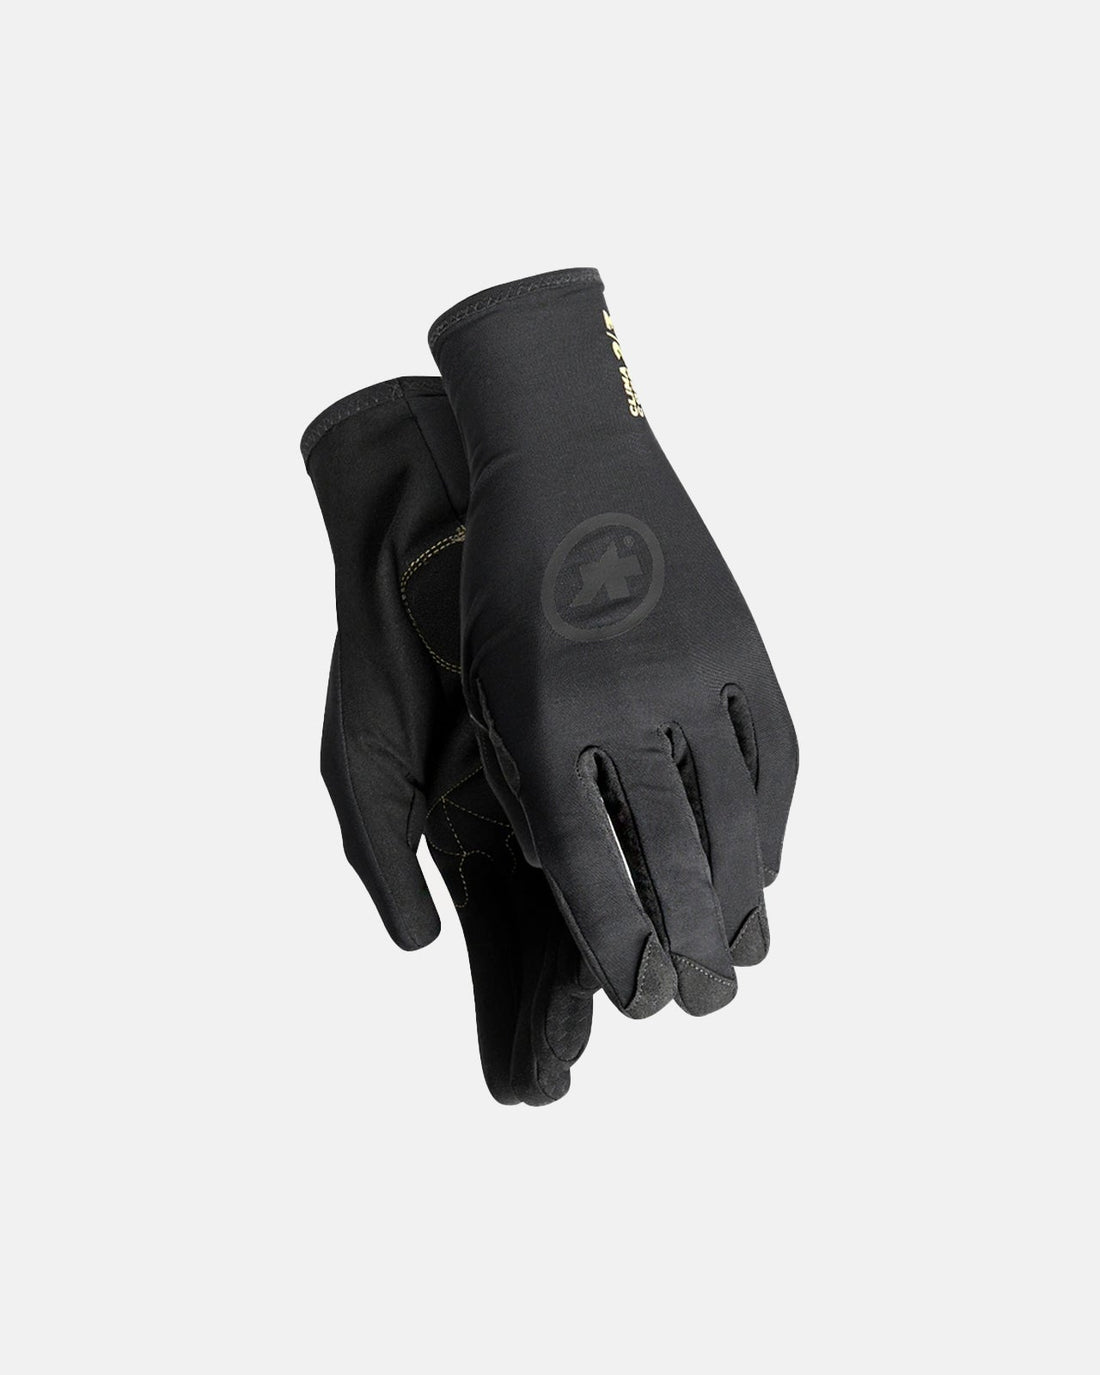 Assos Spring Fall Evo Glove - Black